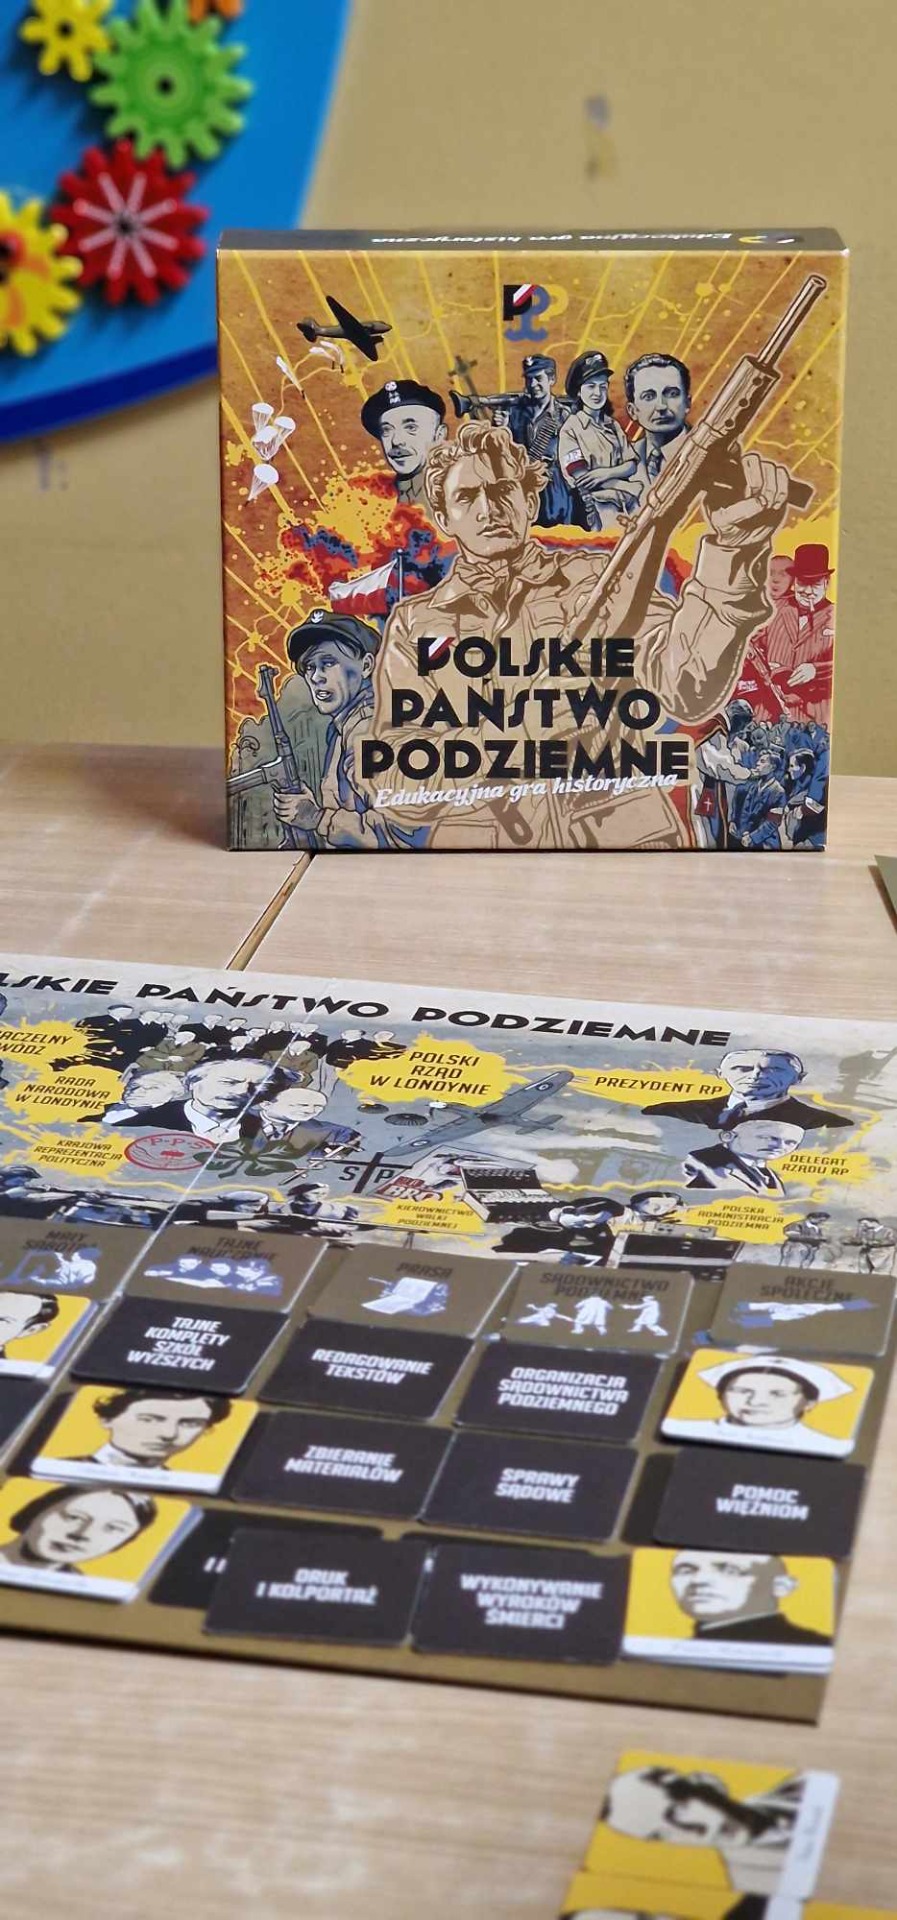 Zdjęcie ukazujące pudełko gry "Polskie Państwo podziemne"